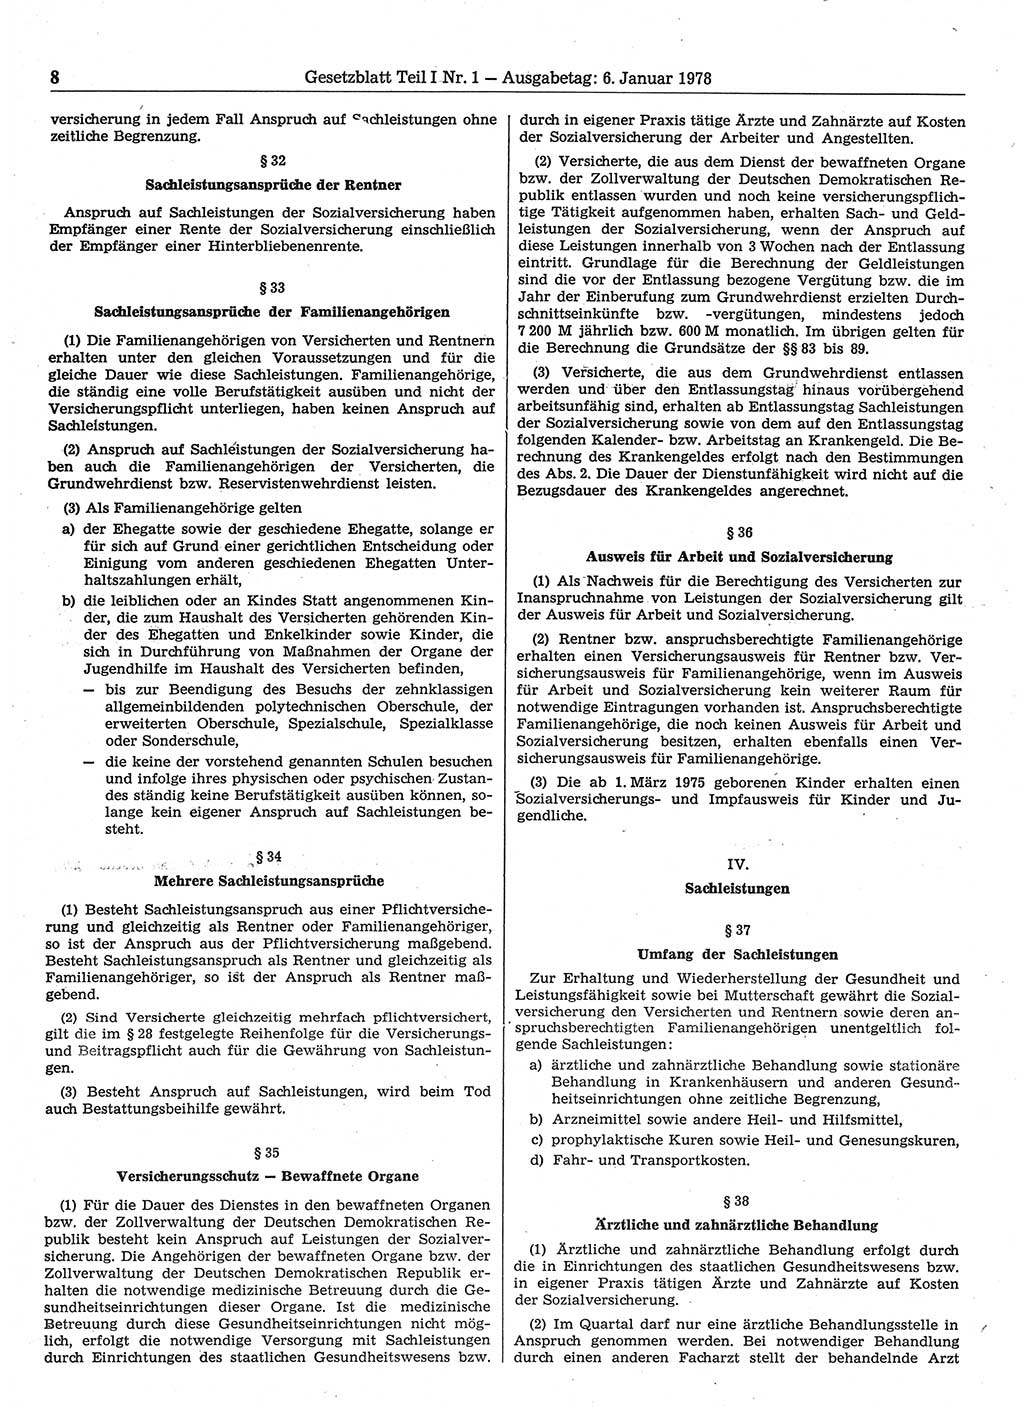 Gesetzblatt (GBl.) der Deutschen Demokratischen Republik (DDR) Teil Ⅰ 1978, Seite 8 (GBl. DDR Ⅰ 1978, S. 8)